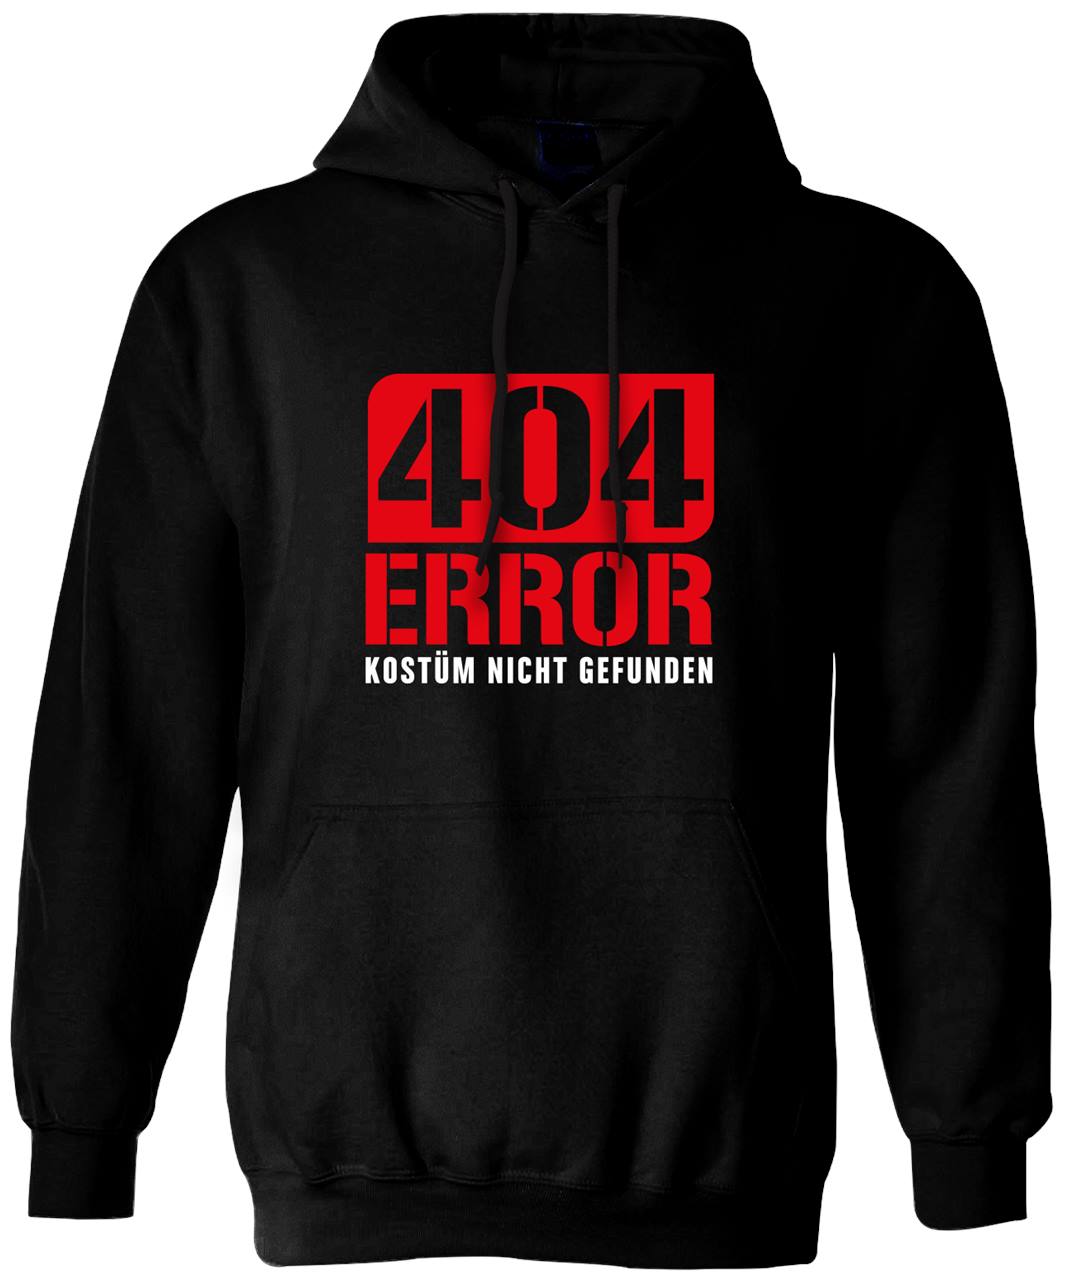 Bild: Hoodie - 404 Error Kostüm nicht gefunden Geschenkidee